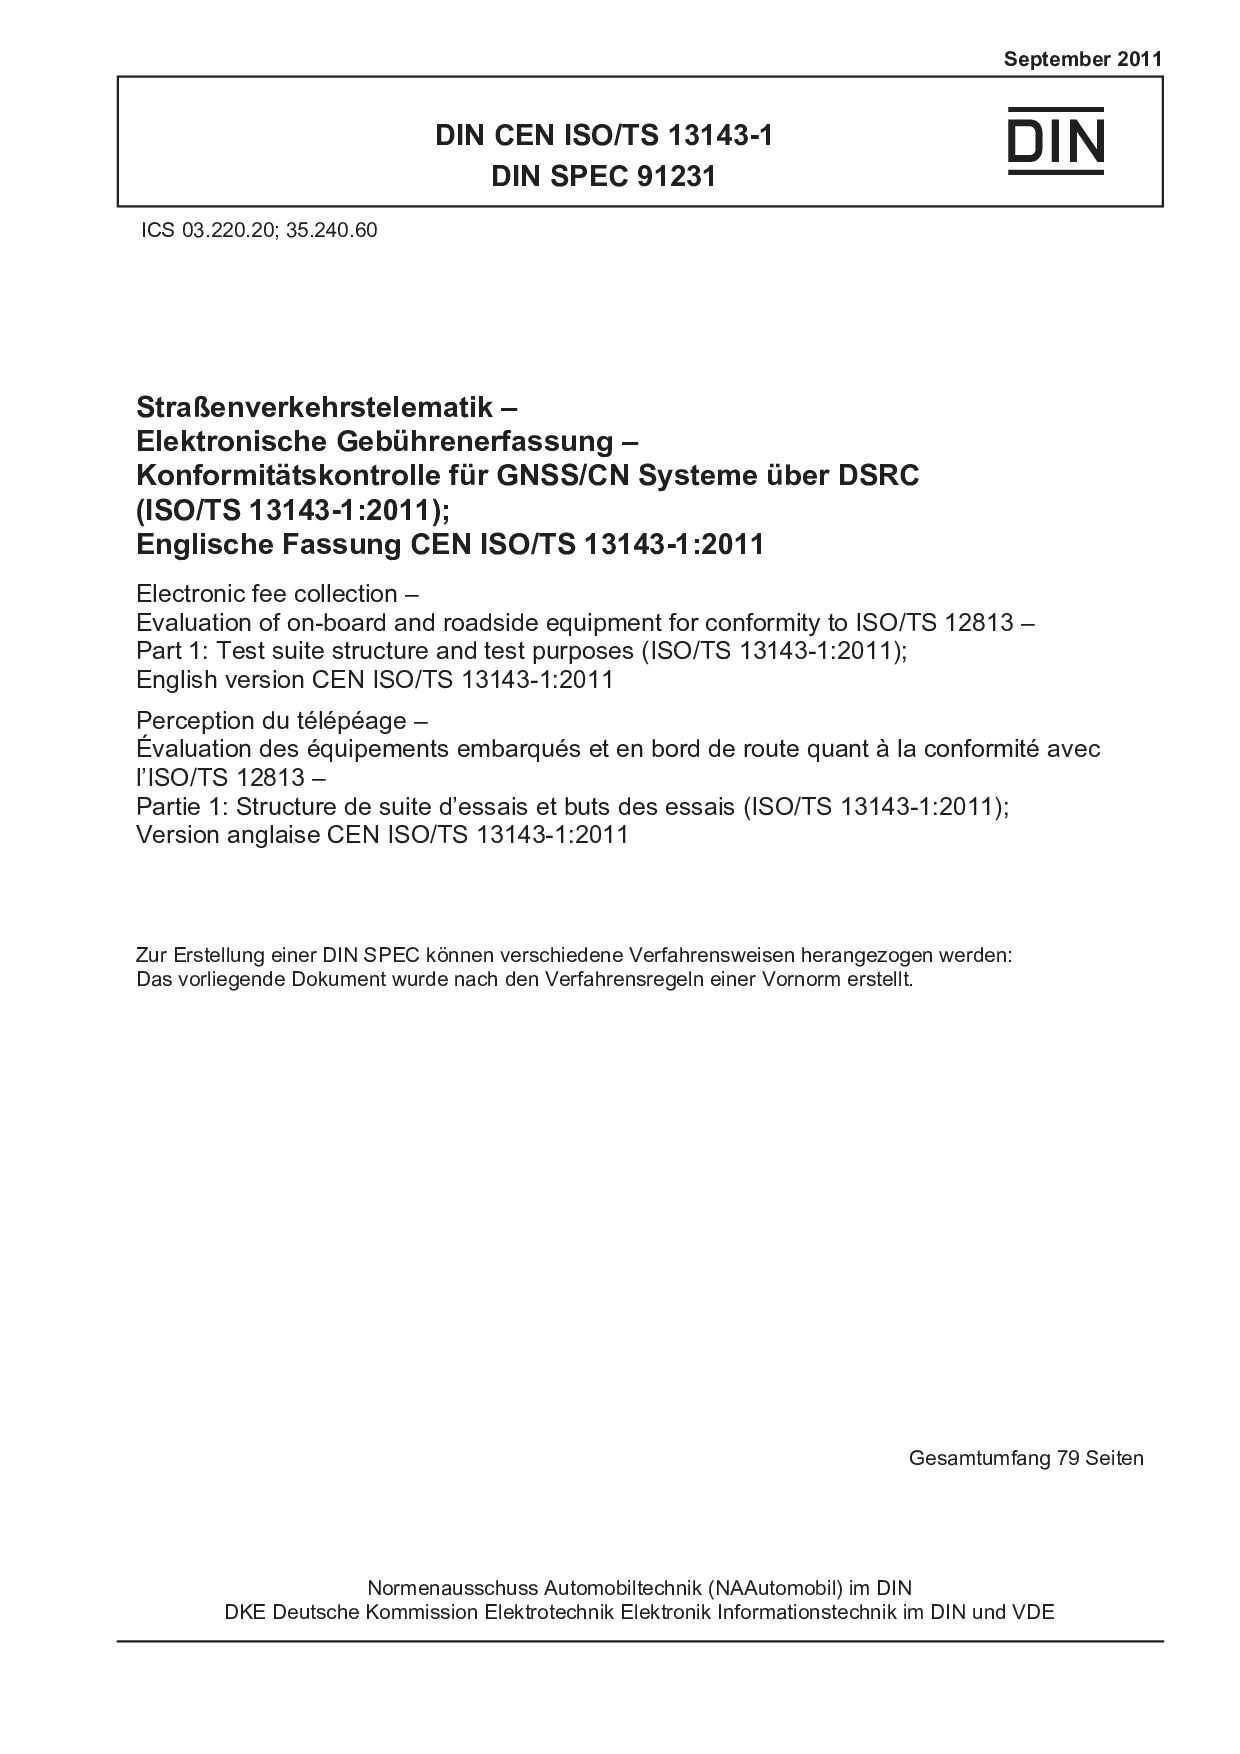 DIN CEN ISO/TS 13143-1:2011